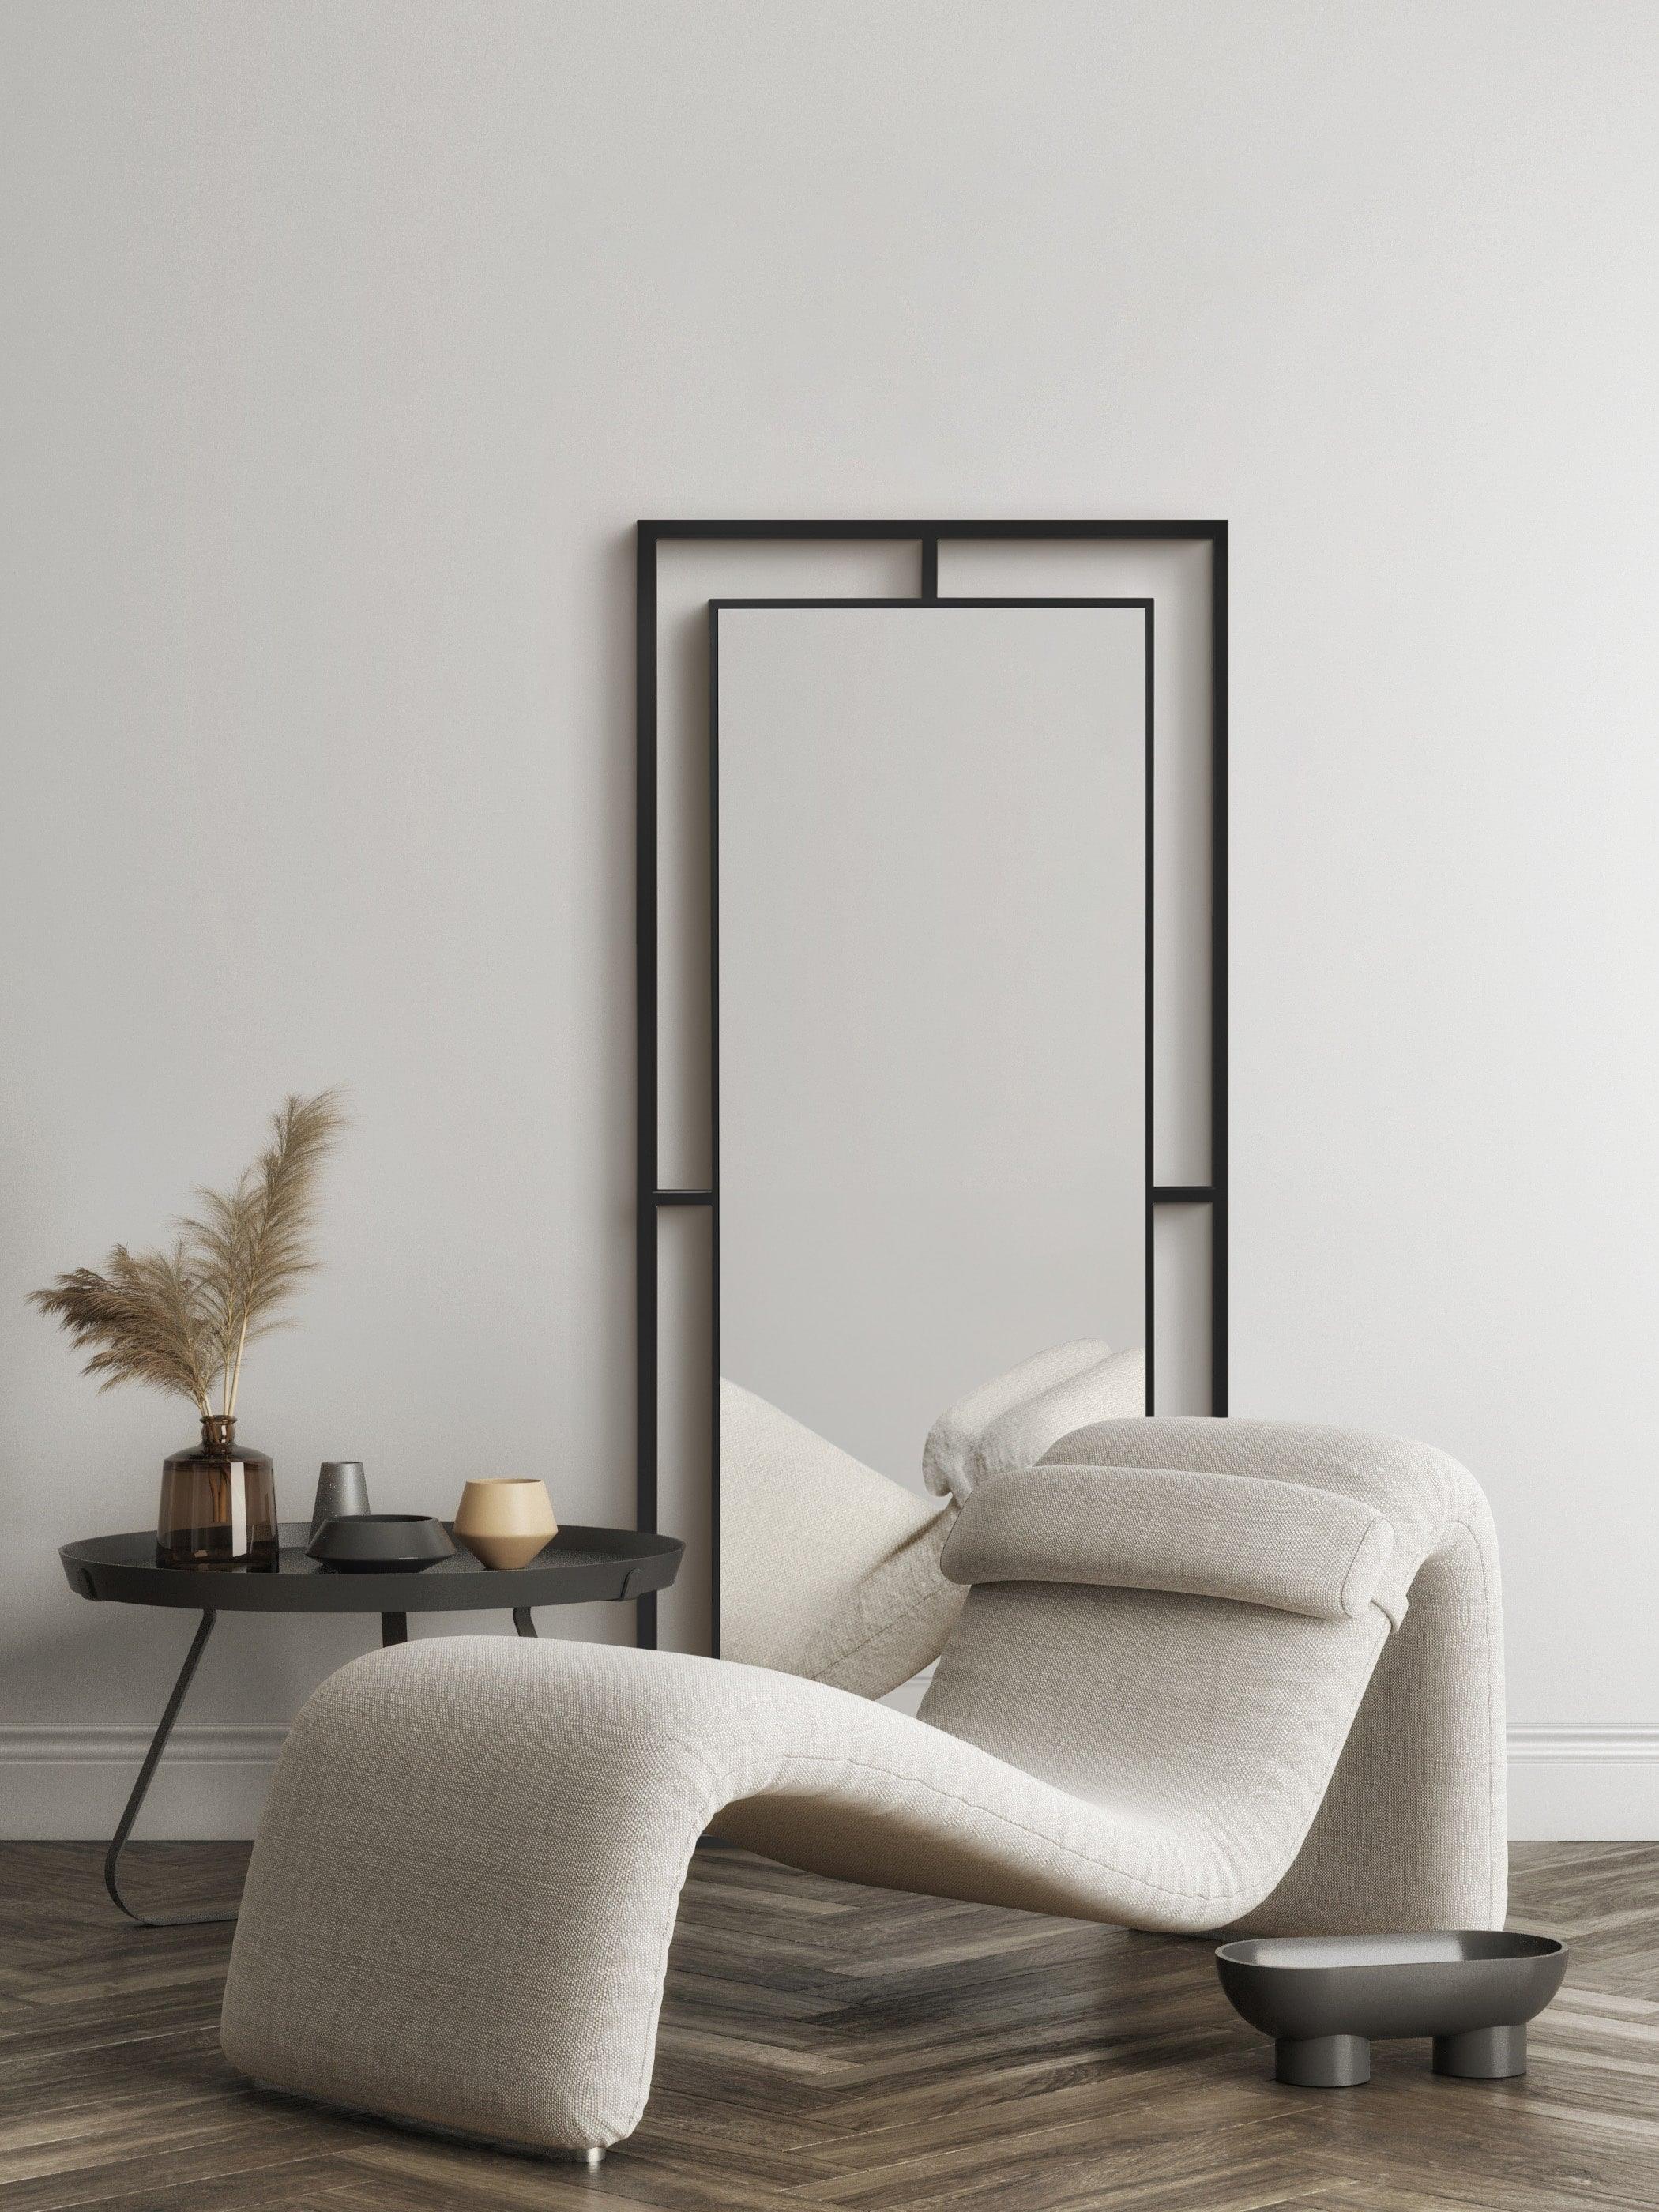 Framed Mirror No. 1 | Stort spejl med Jernramme | 180 x 80 cm. - Smuk placering i hjemmet